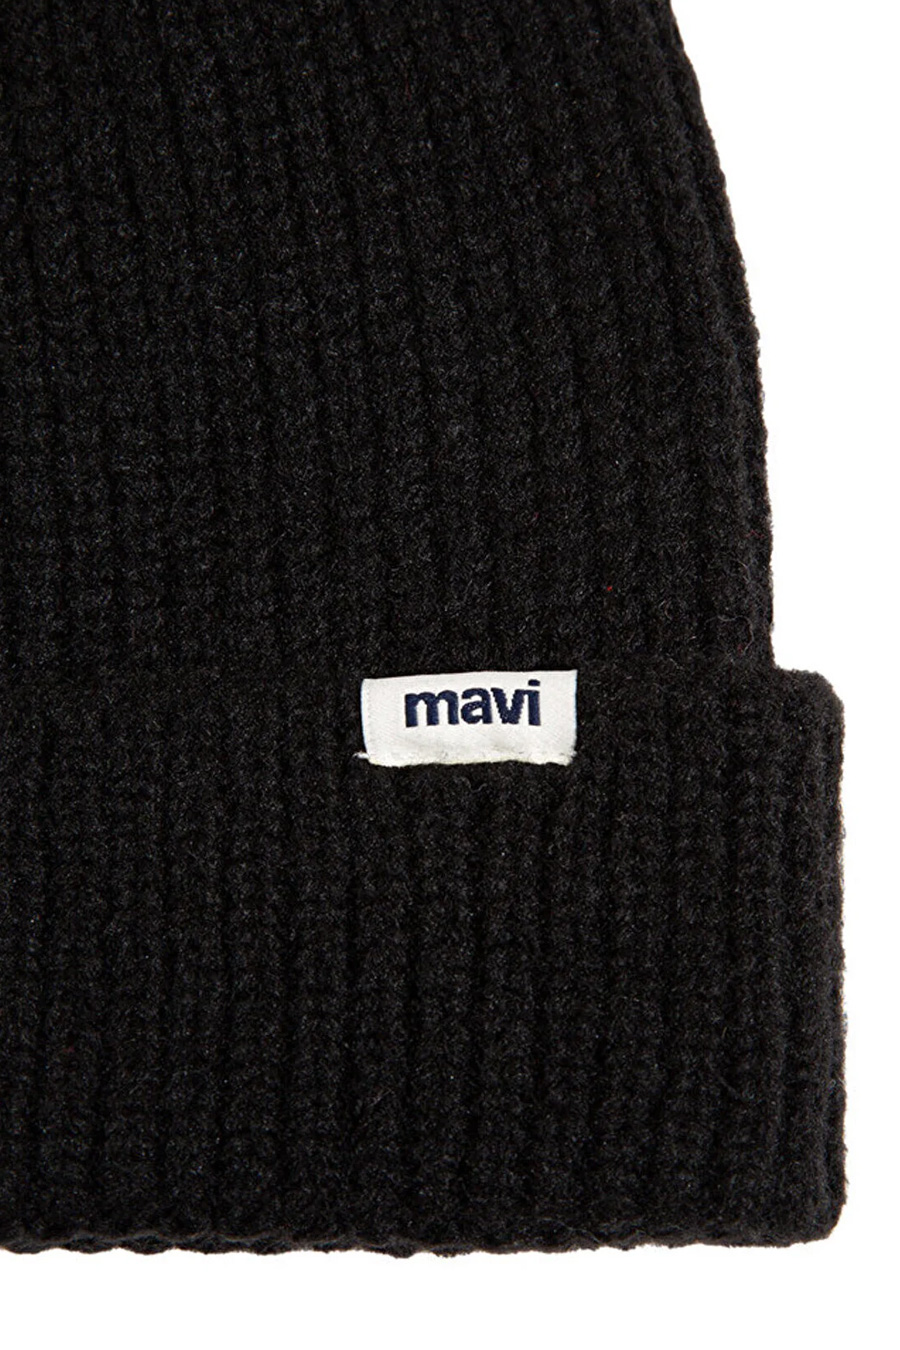 Wintermützen MAVI 1910719-900